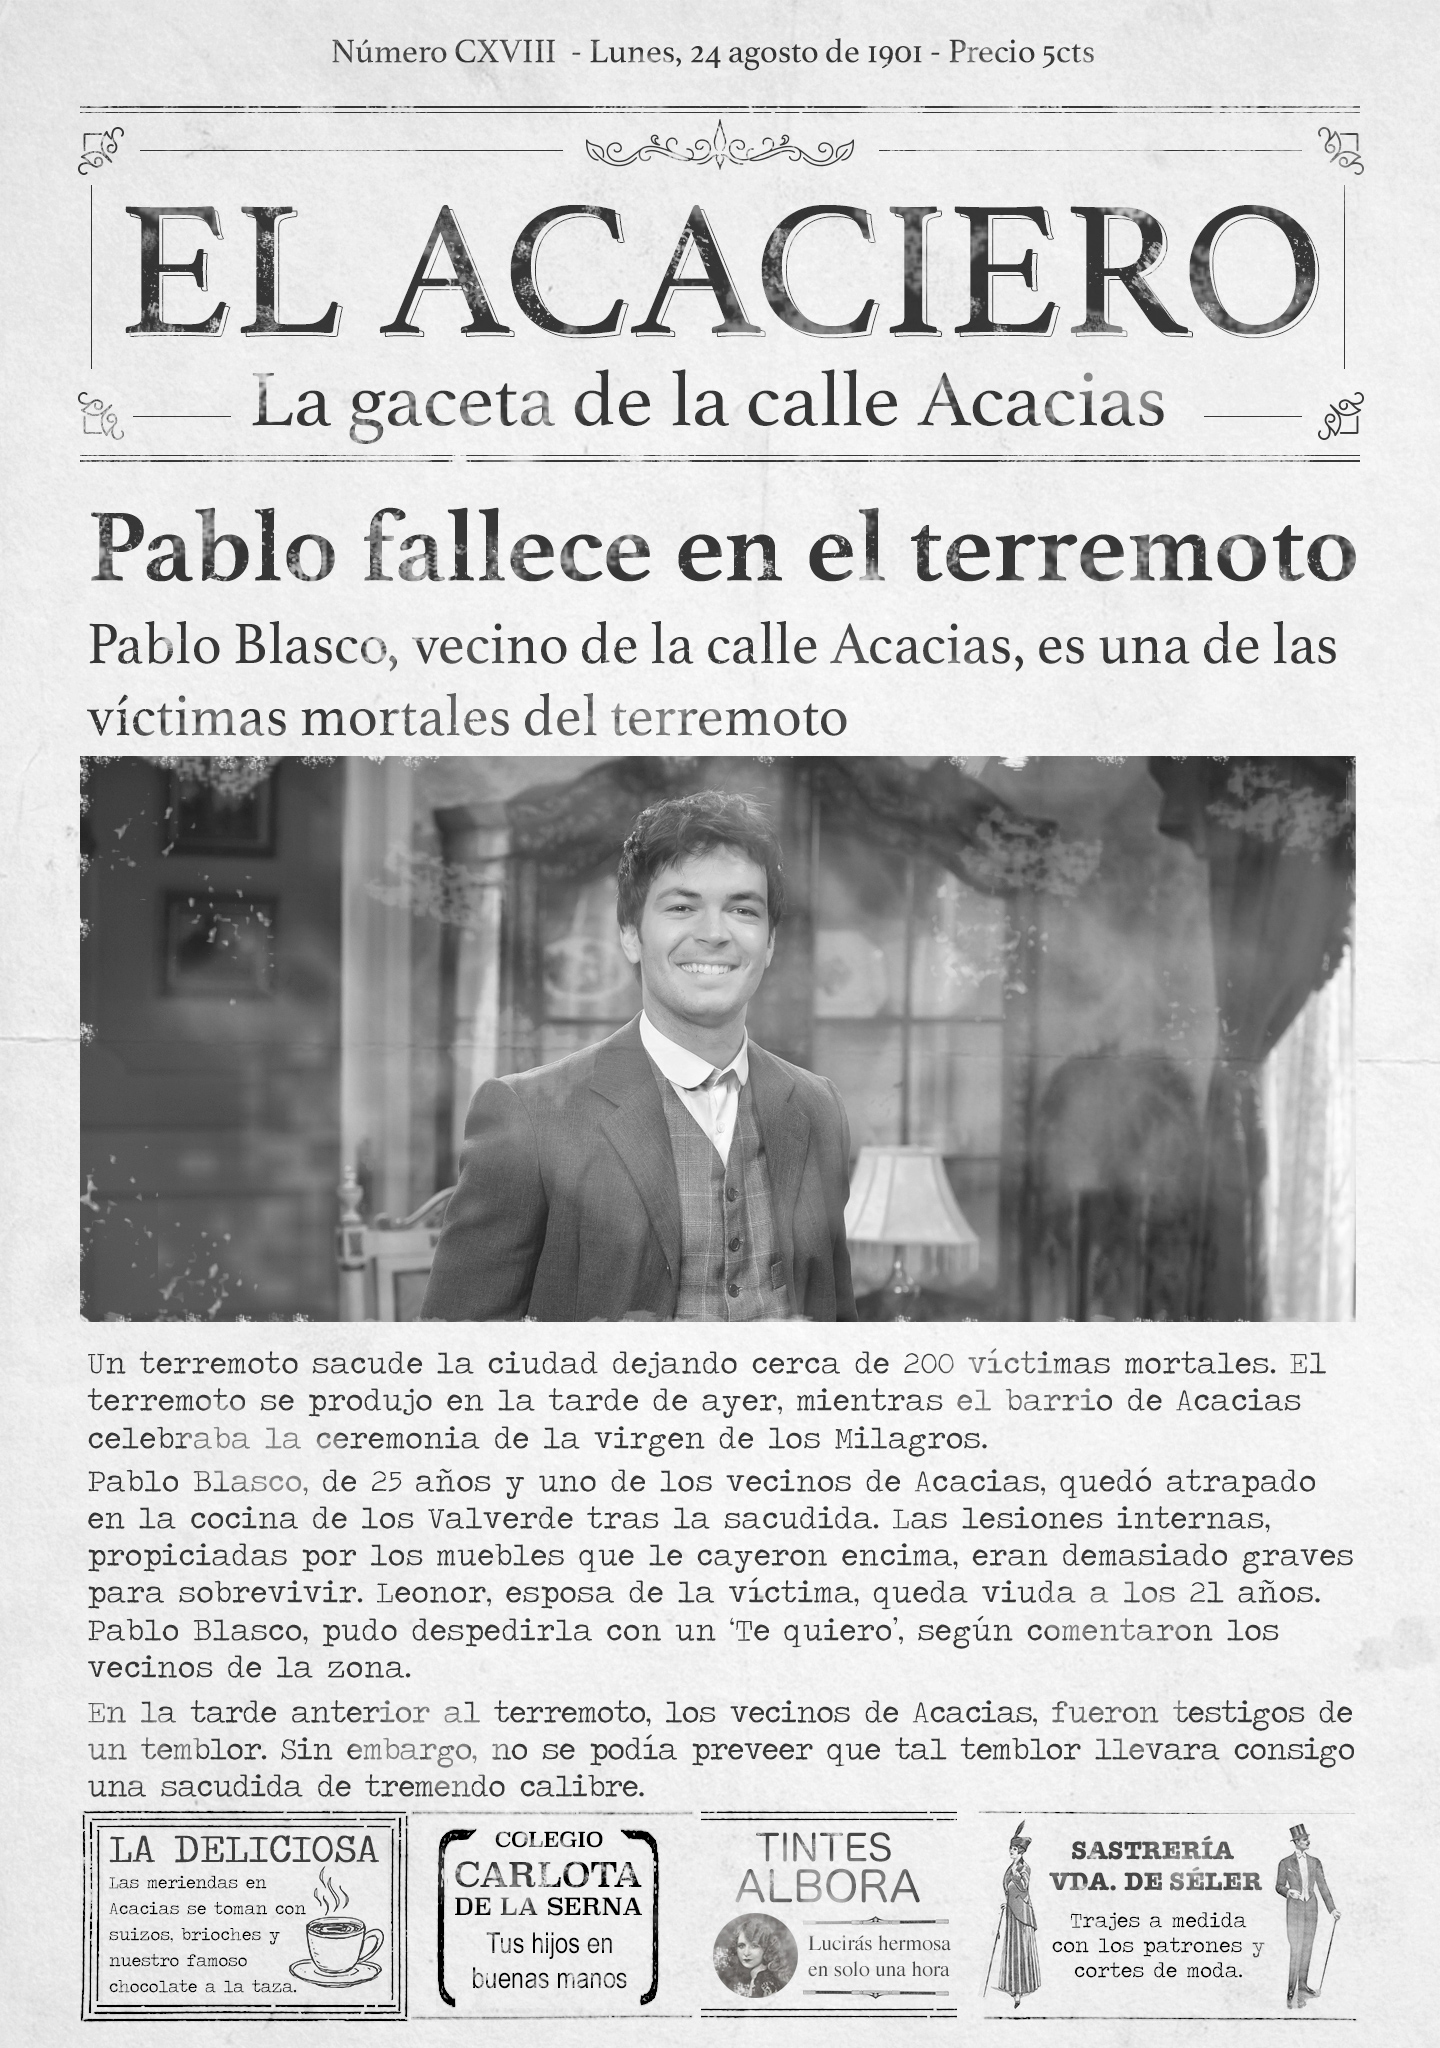 Pablo Blasco es una de las víctimas mortales del terremoto de la calle Acacias